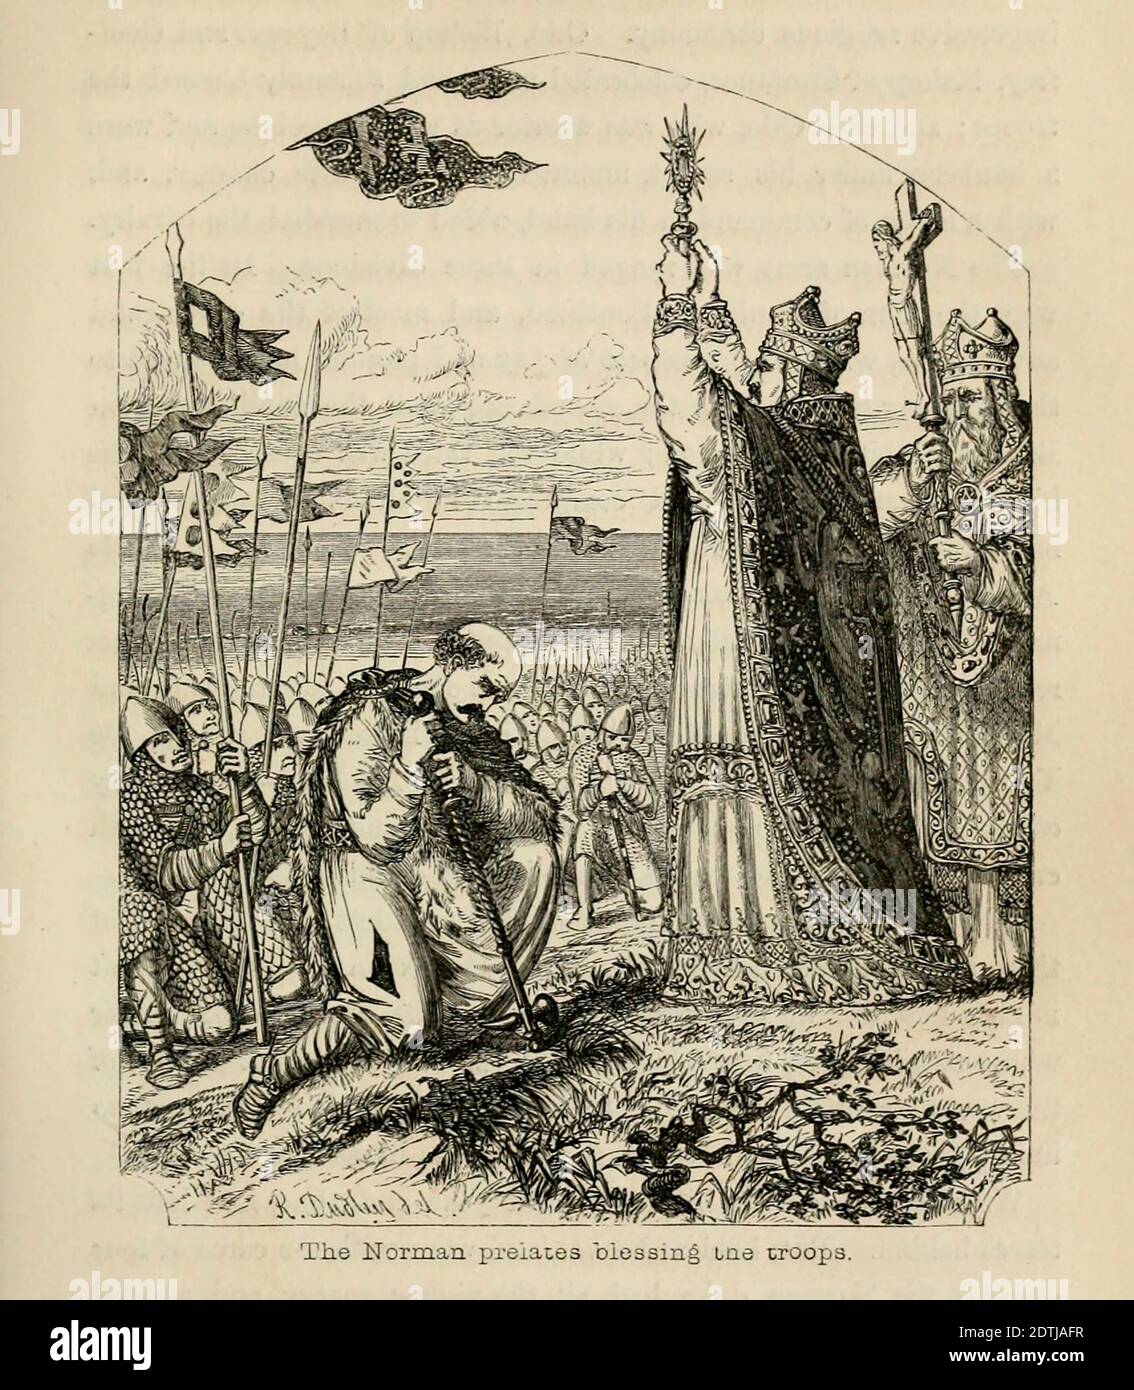 Die normannischen Prälaten segnen die Truppen aus dem Buch "Danes, Saxons and Normans : or, Stories of our Ahnen" von Edgar, J. G. (John George), 1834-1864 Veröffentlicht in London im Jahr 1863 Stockfoto